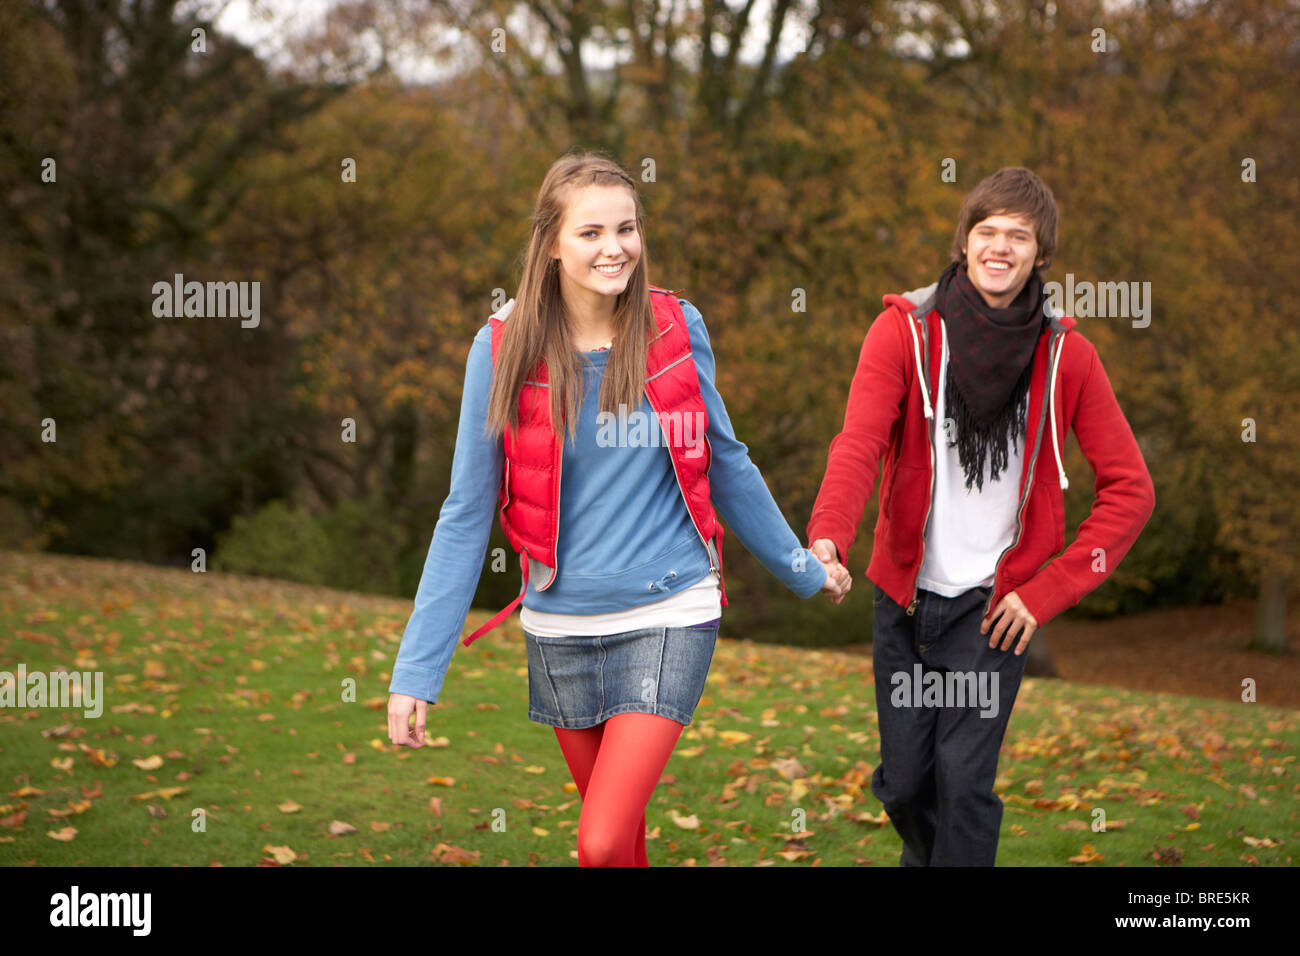 Couple romantique marche à travers un paysage d'automne Banque D'Images